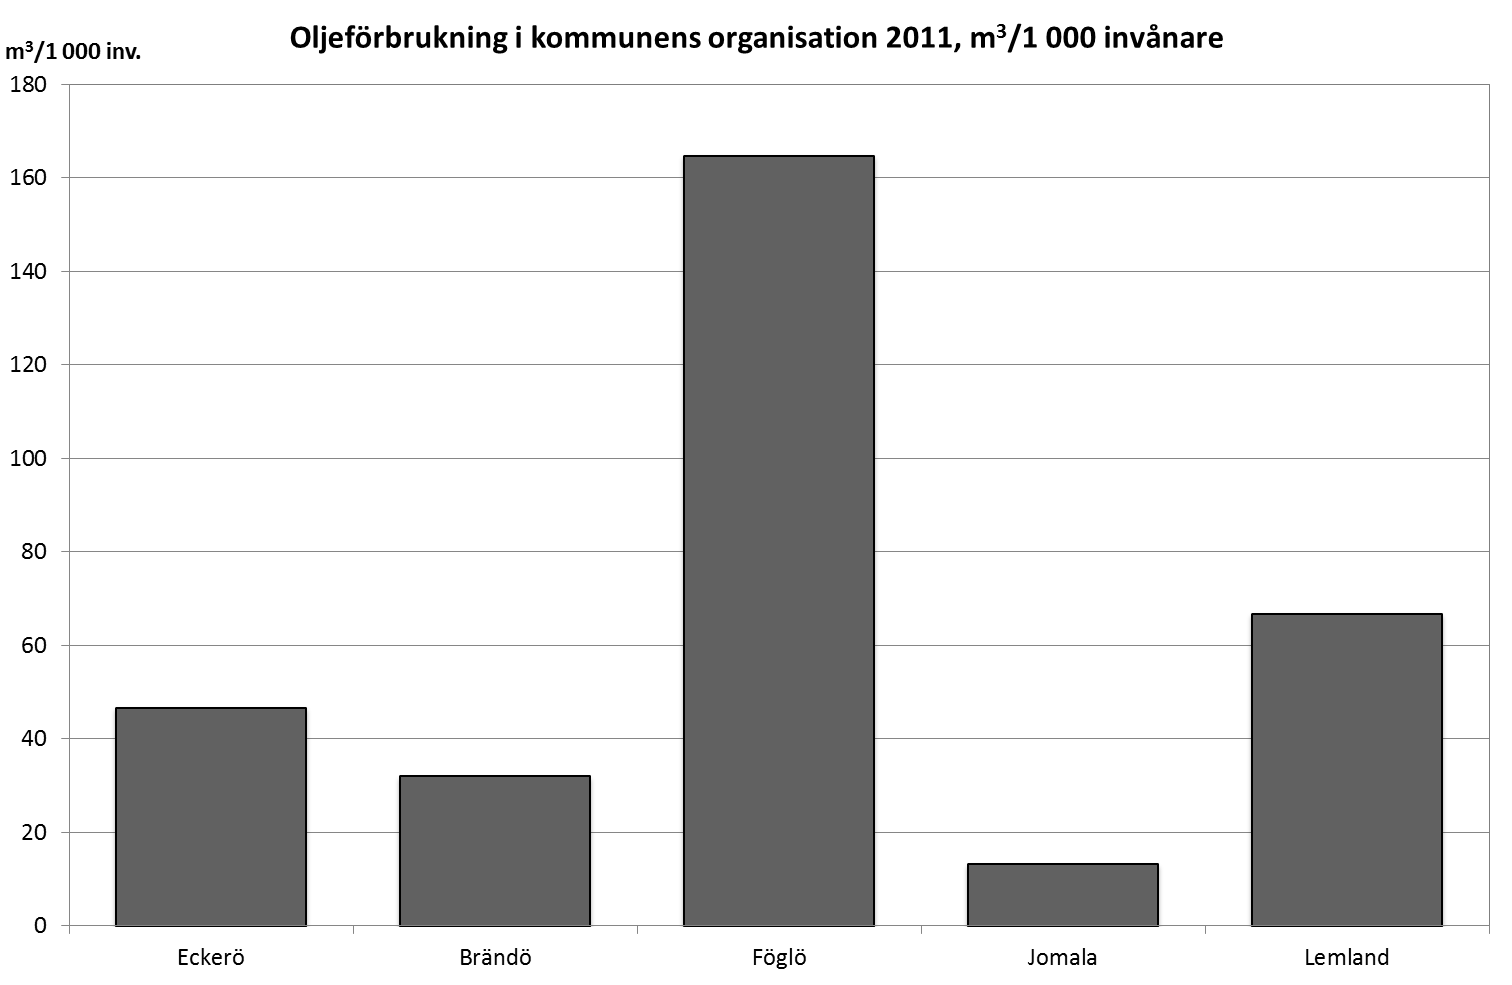 Oljeföbrukning per 1000 invånare högst i Föglö 2011